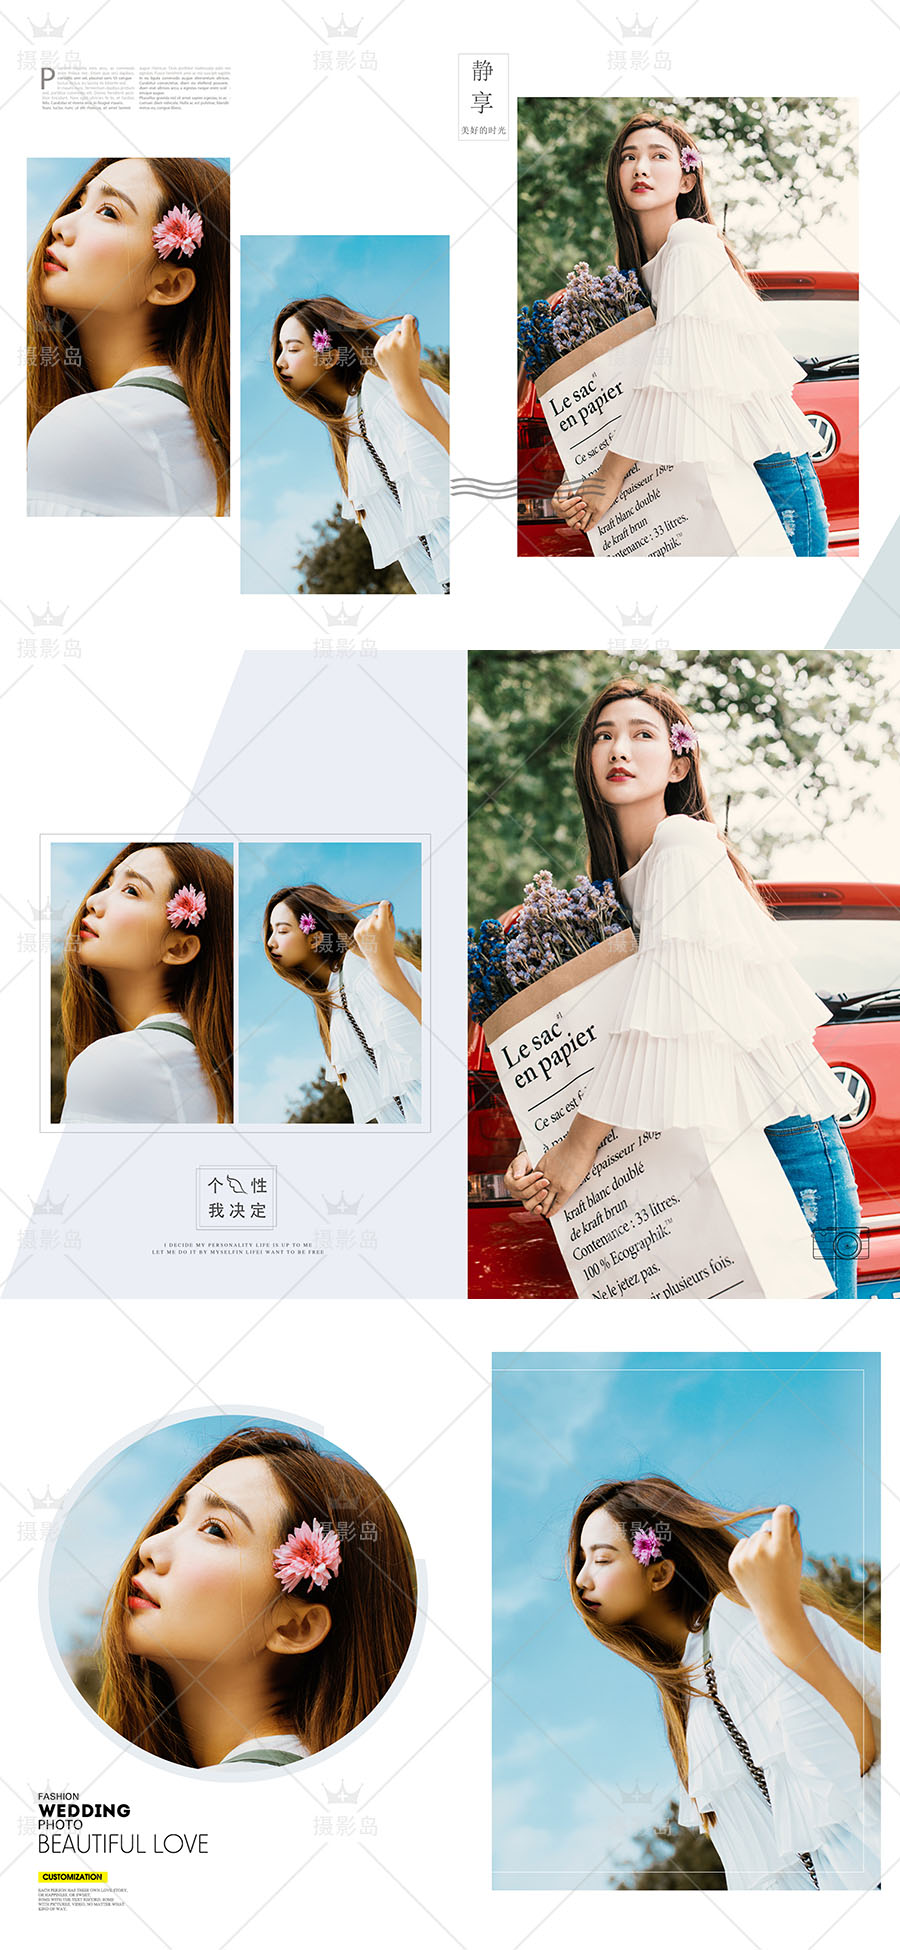 清新、性感个人日系写真摄影相册PSD模板，现代文艺时尚浪漫风格相册